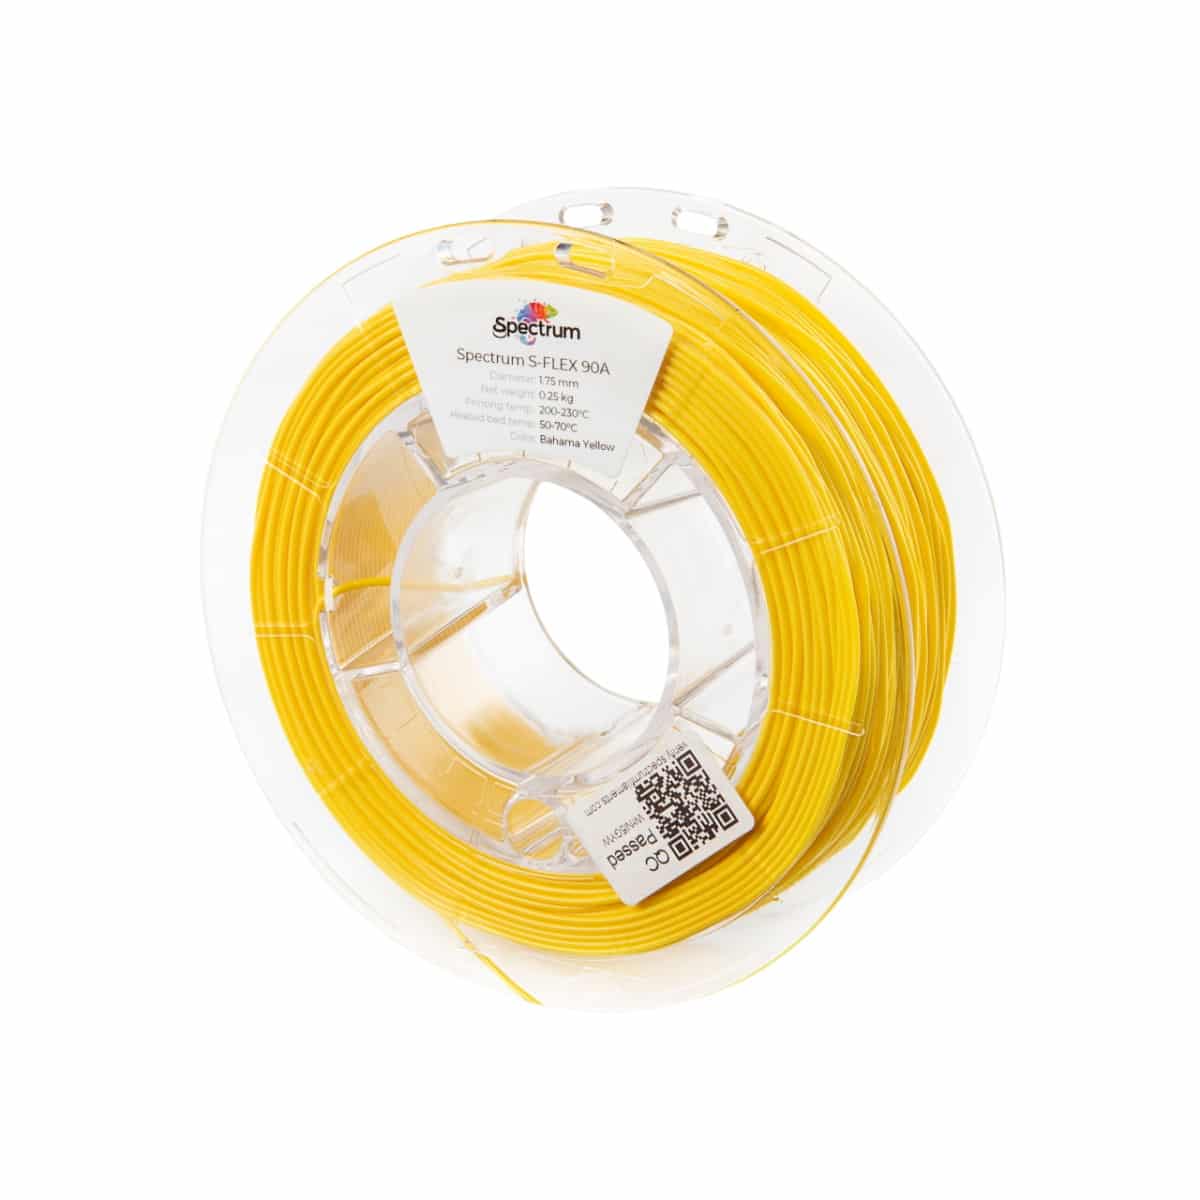 Køb Spectrum Filaments - S-Flex 90A - 1.75mm - Bahama Yellow - 0.25kg 3d printer - Pris 140.00 kr.